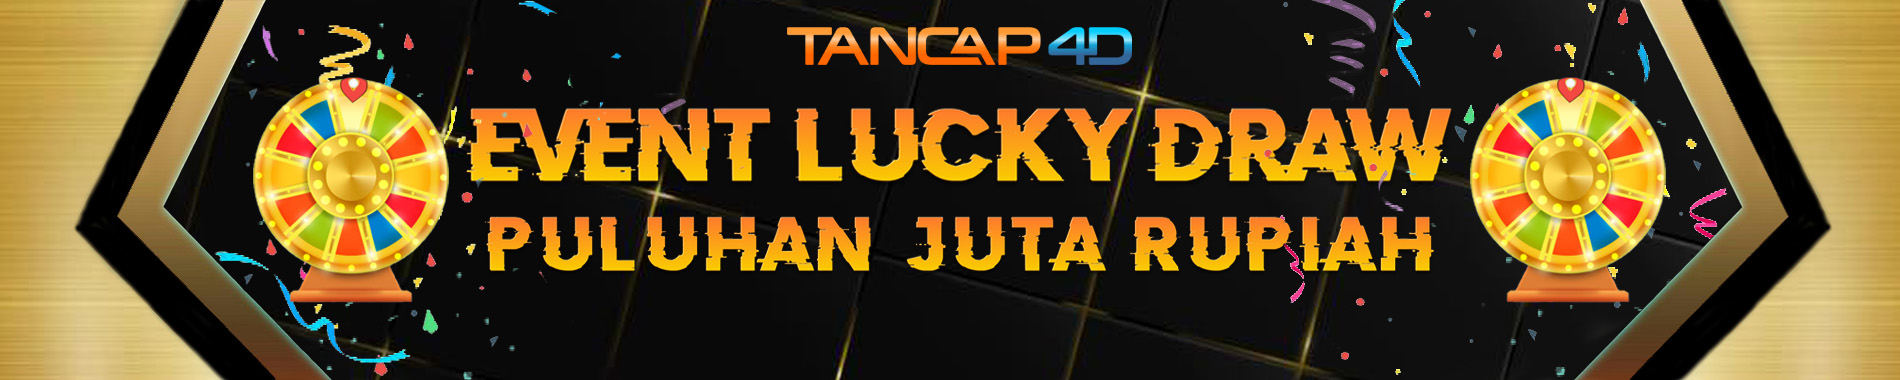 tancap4d-luckydraw